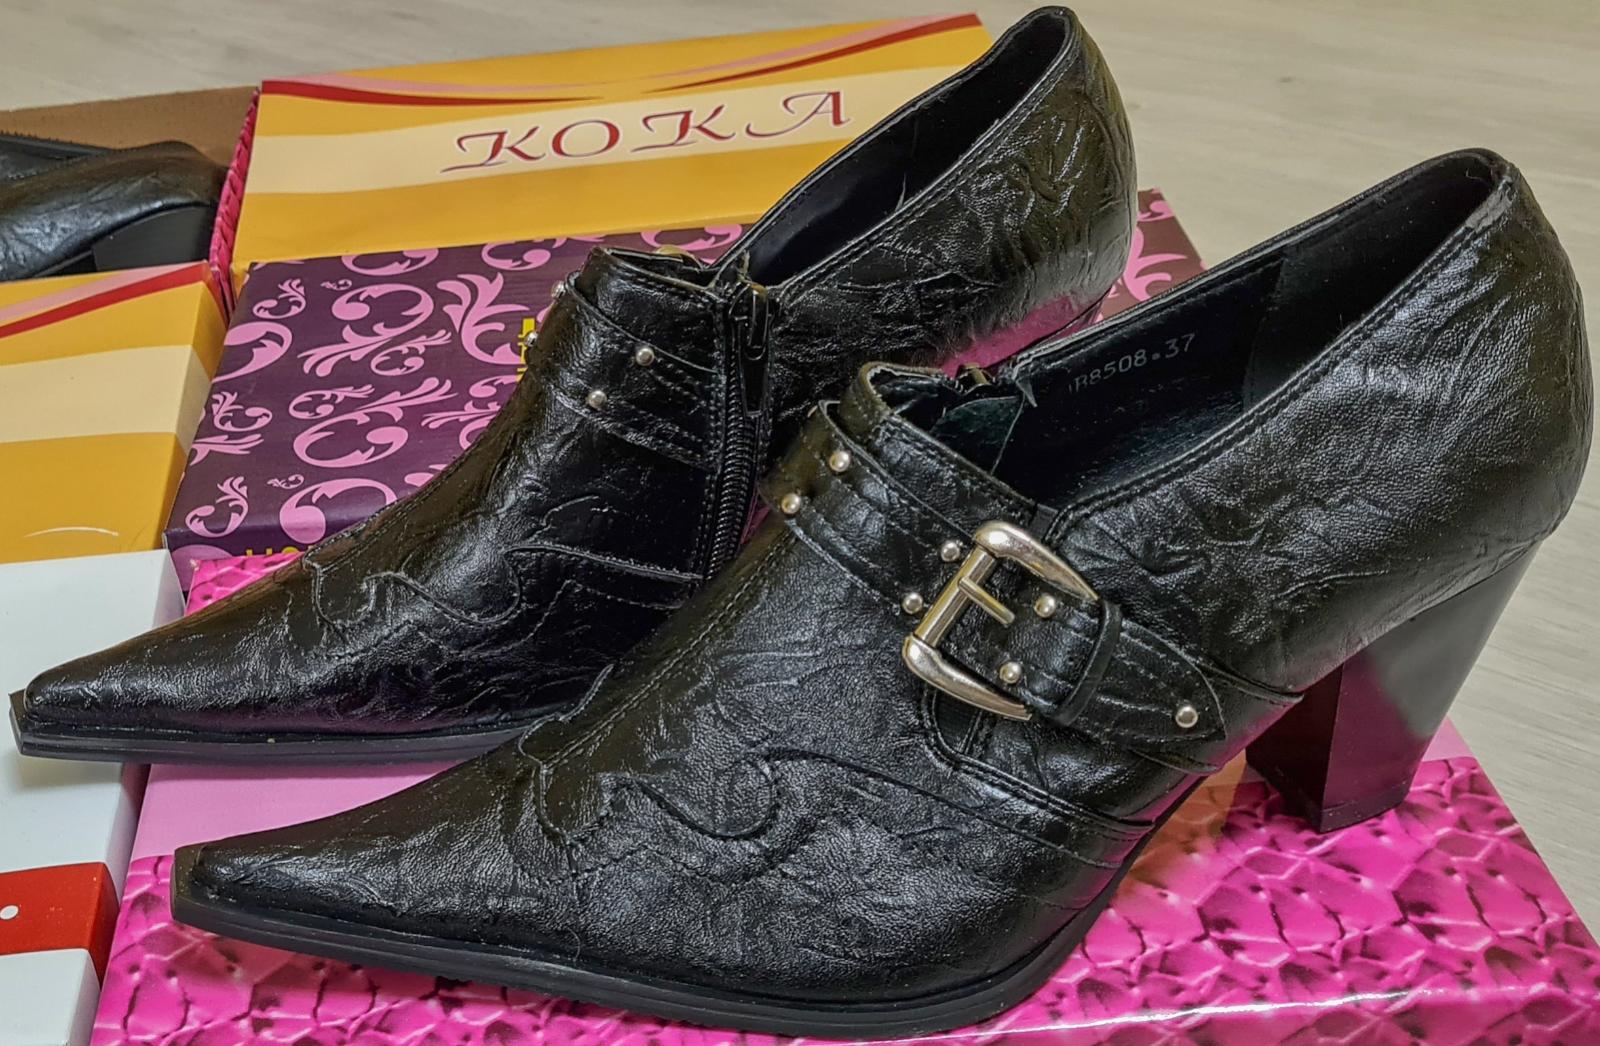 Dámská obuv Koka a Bao Bao, SADA 6 párů, v. 36 cena je za CELOU SADU ! - Dámske topánky